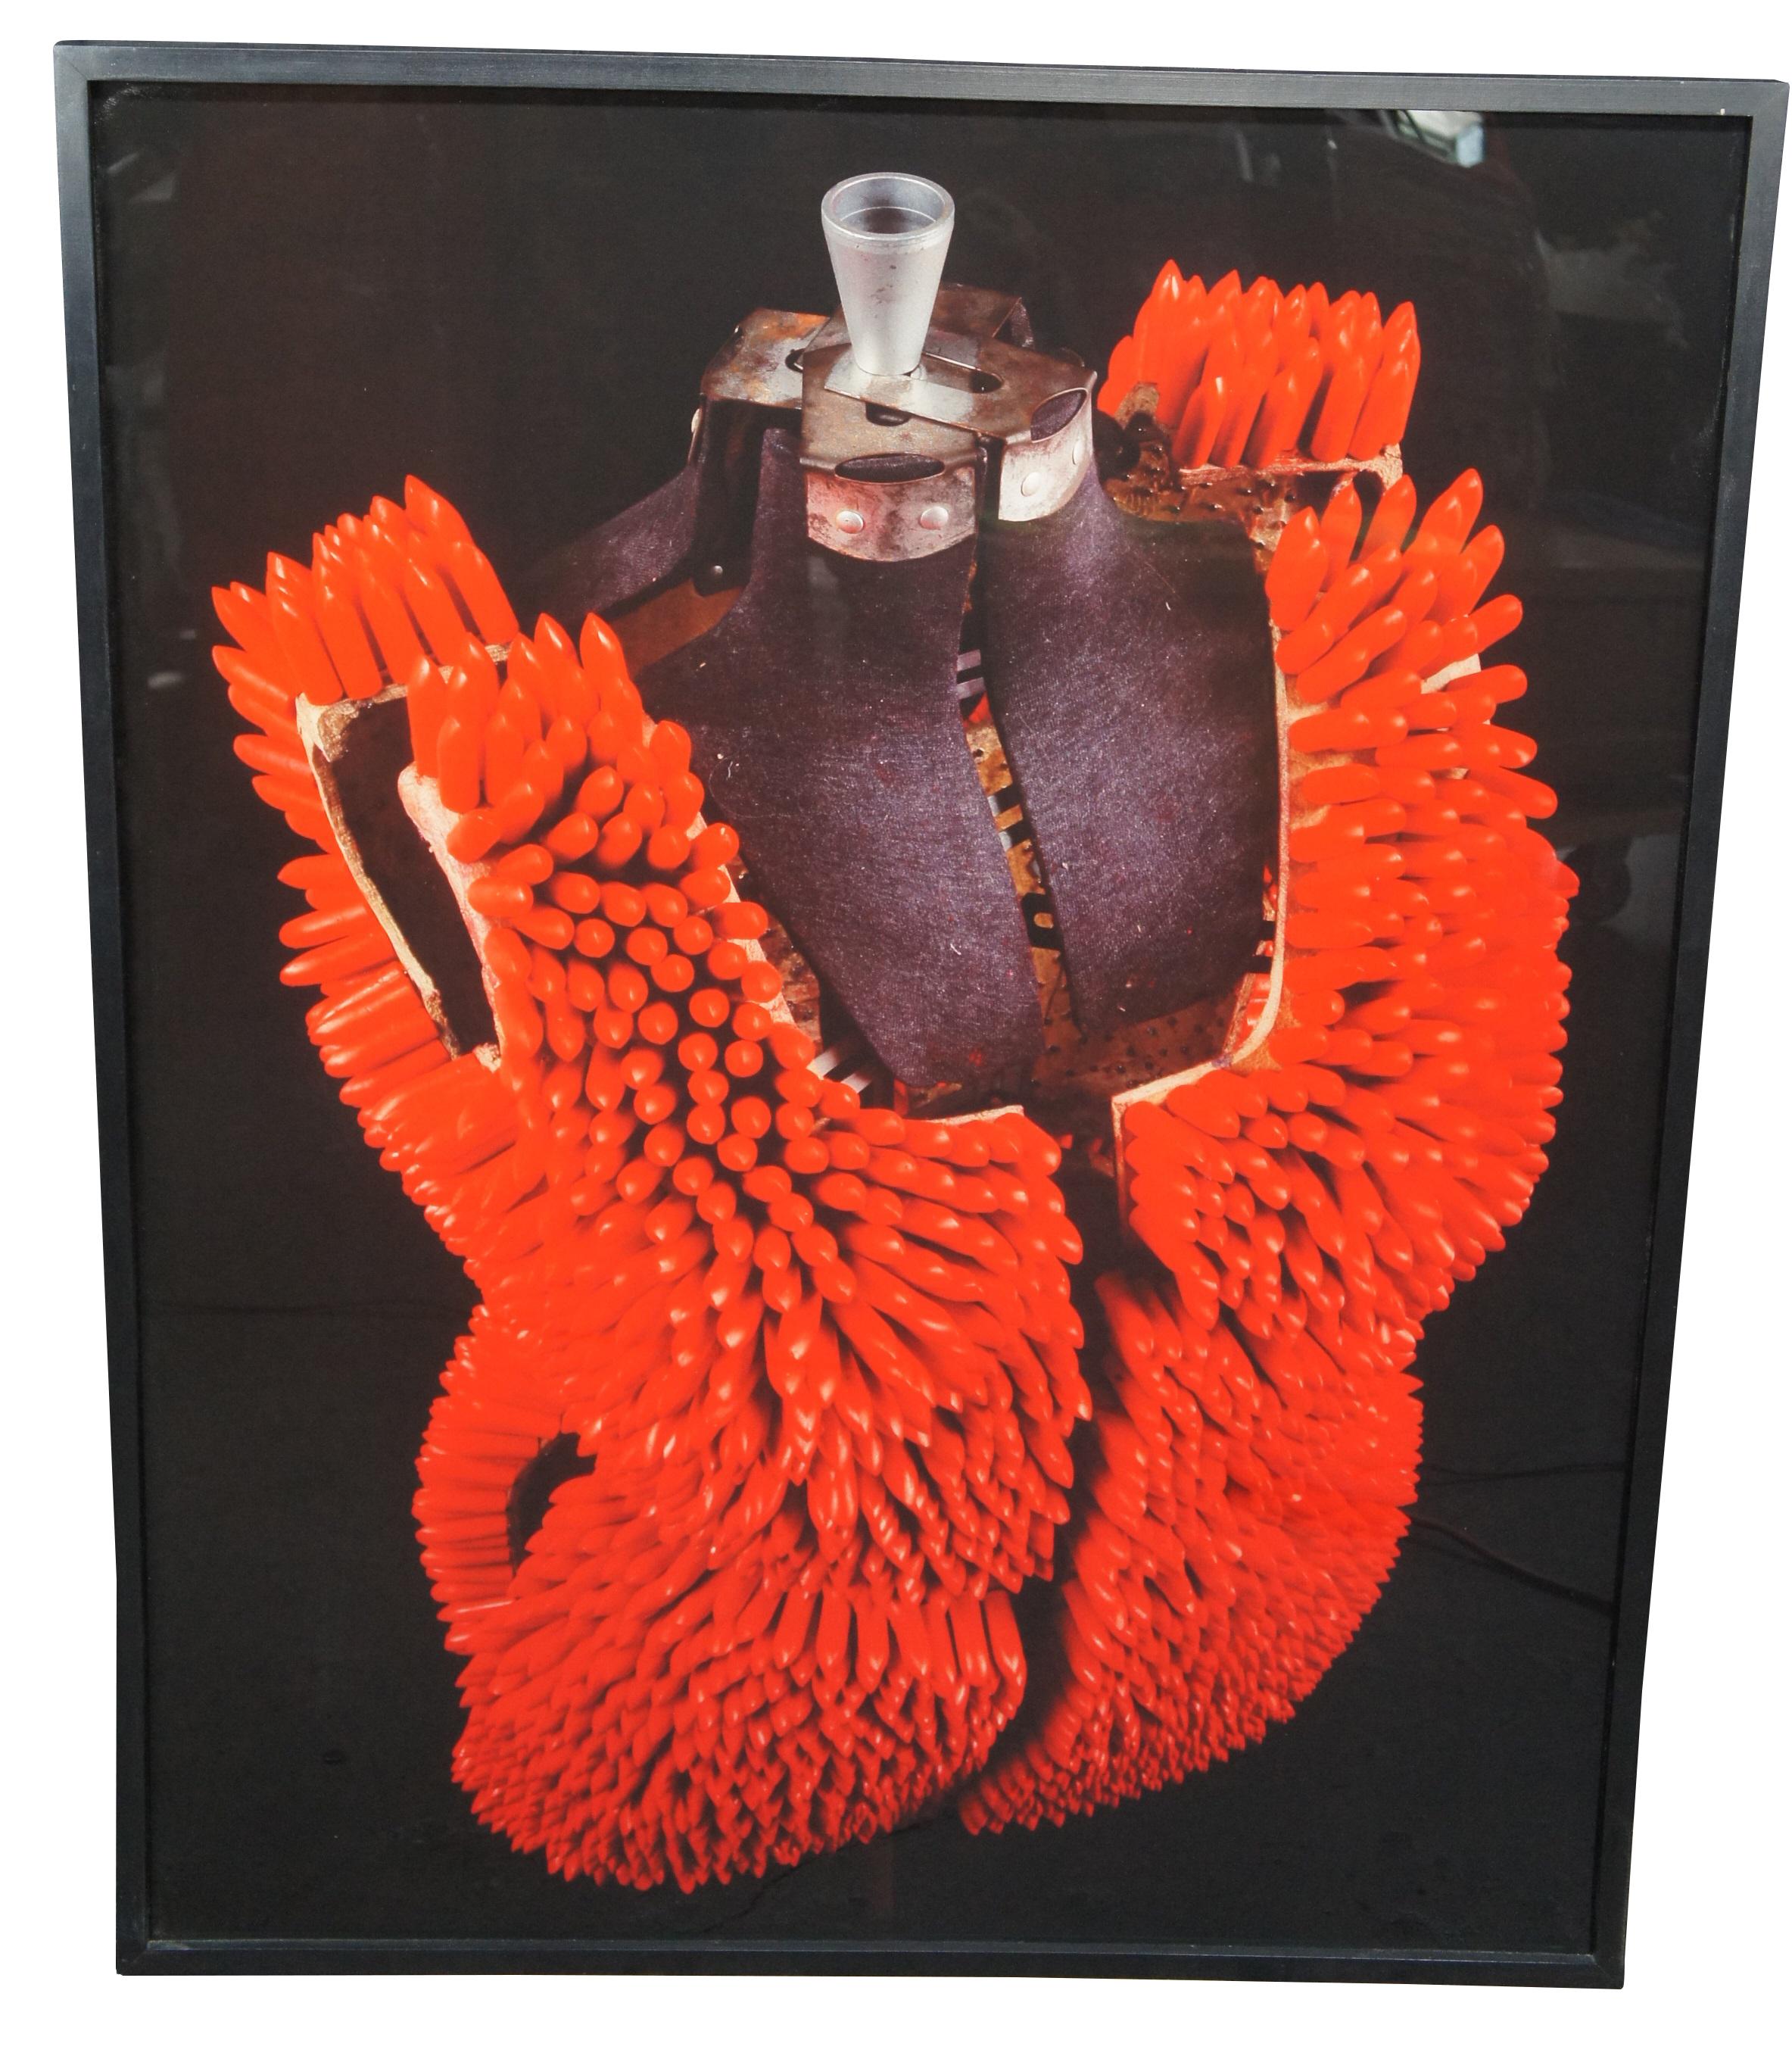 Vintage 1993 Lipstick Dress 1, 2 & 3 par Janet Biggs.  Trio de panneaux photographiques cibachromes représentant une armure de rouge à lèvres sur une forme de mannequin.

Janet Biggs, américaine, née en 1959.
Janet Biggs est une artiste américaine,